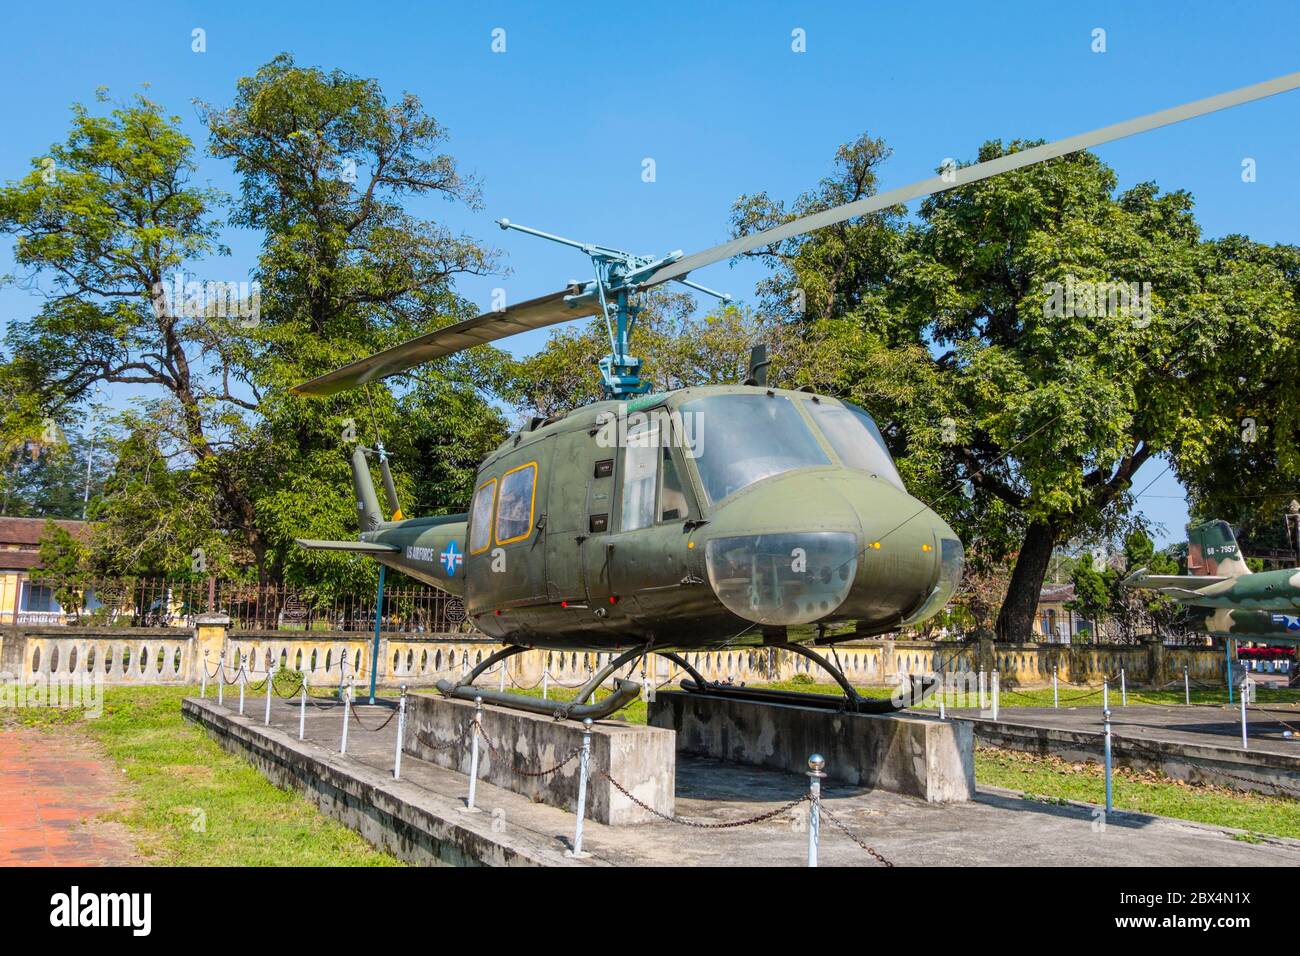 UH-1 Hubschrauber, von der US-Armee in Vietnam Armee verwendet und beschlagnahmt im Jahr 1975, Thua Thien Hue History Museum, Hue war Museum, Hue, Vietnam Stockfoto